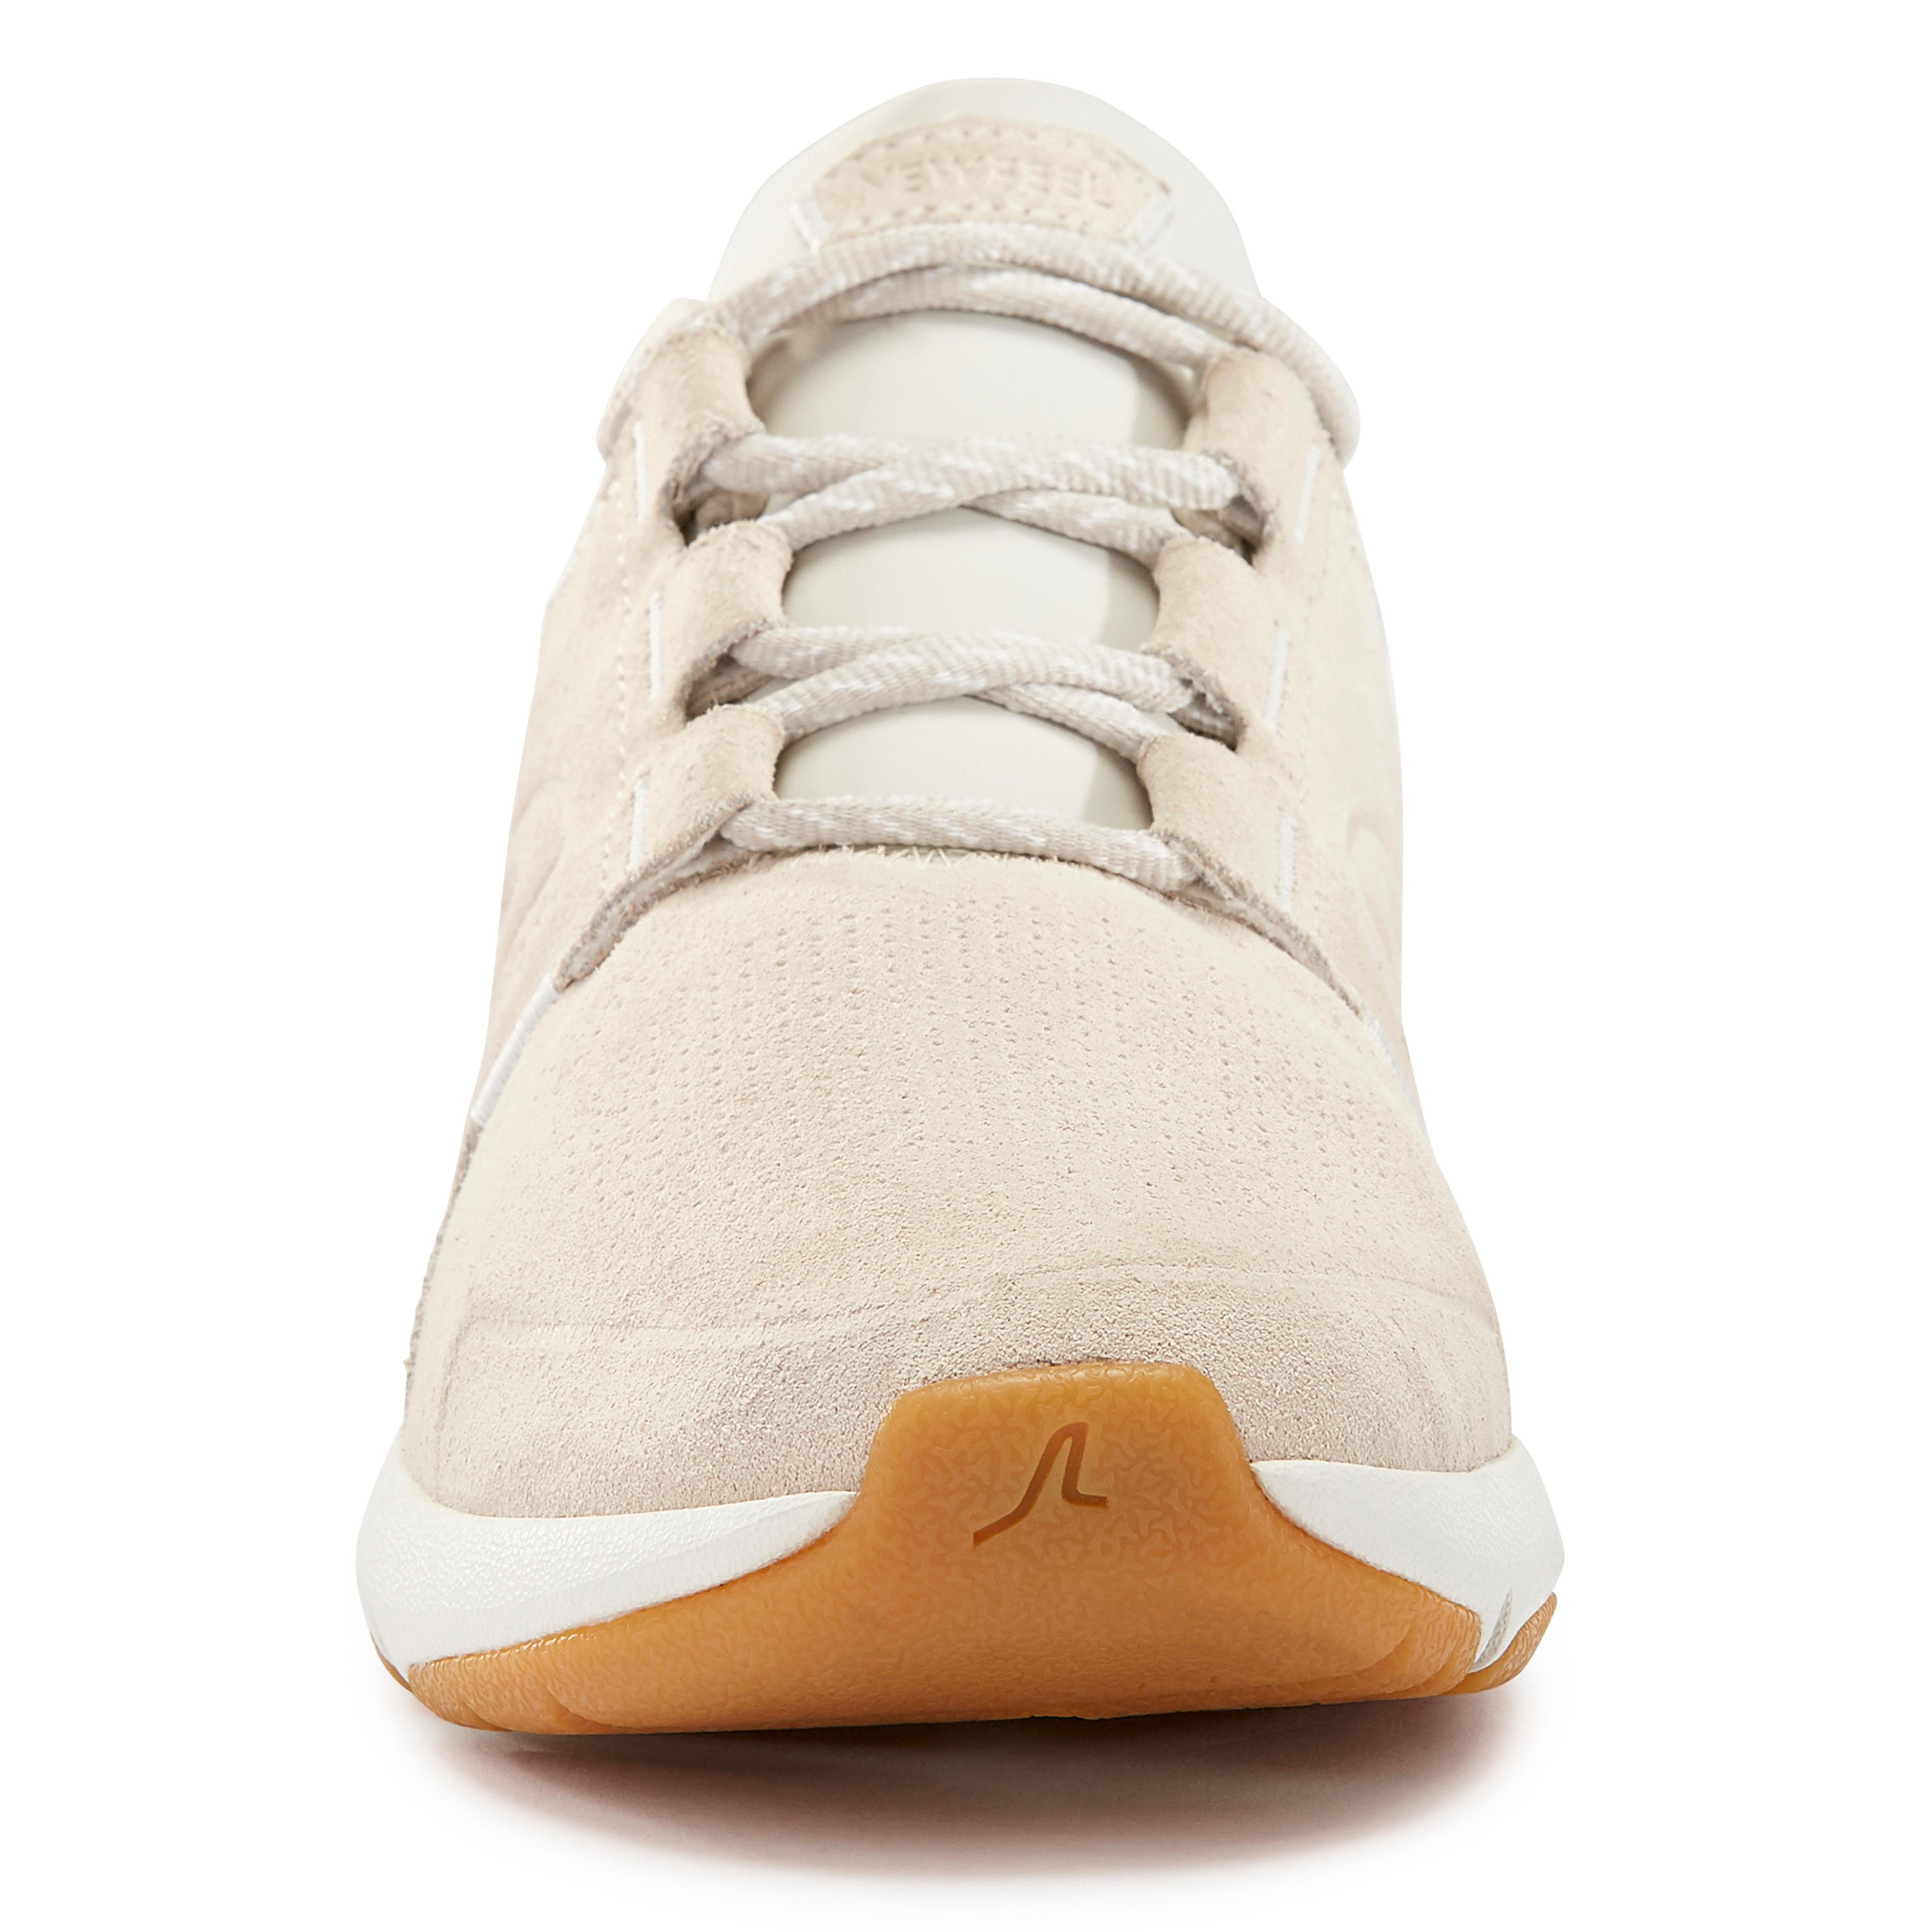 Women's City Walking Shoes Actiwalk Comfort Leather - beige 26/32